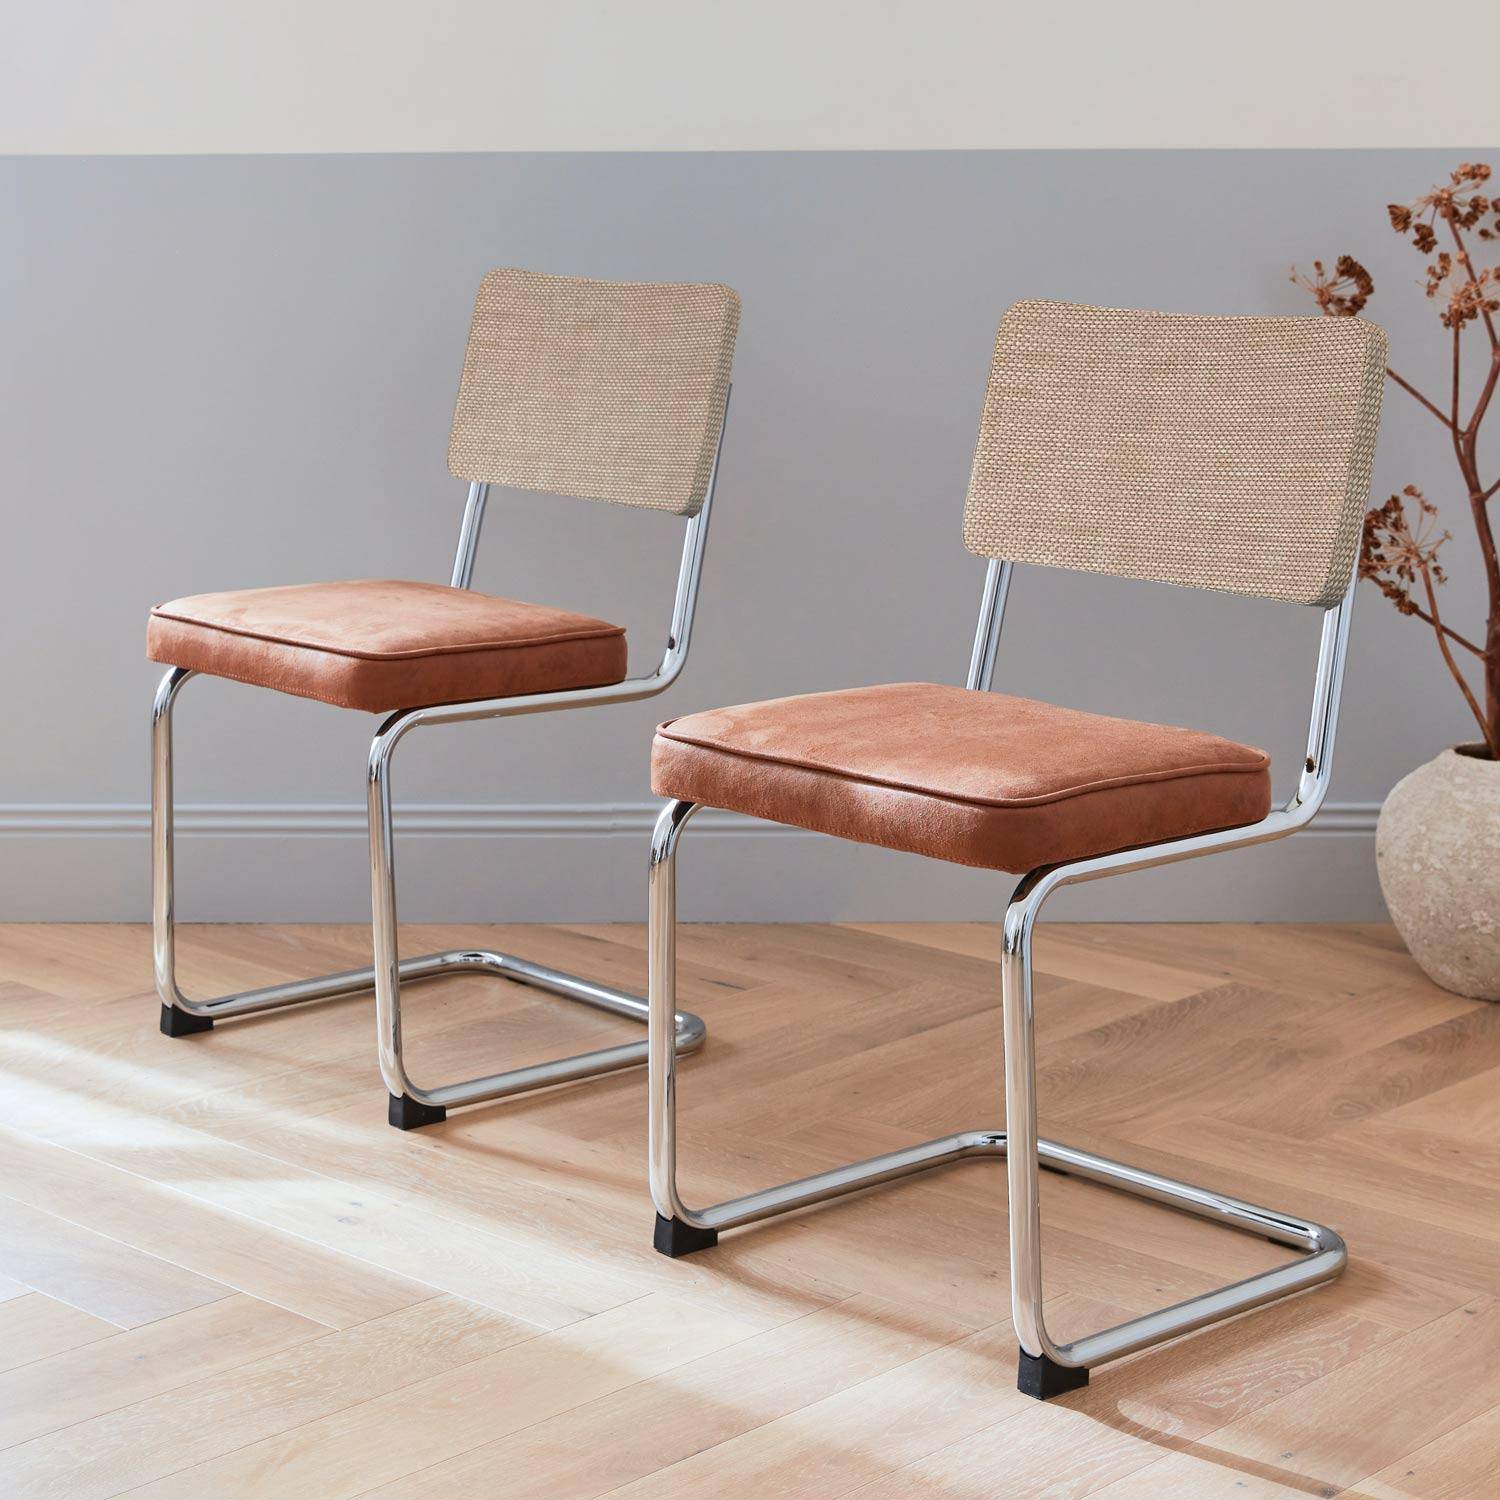 2 sillas cantilever - Maja - tela marrón claro y resina efecto ratán, 46 x 54,5 x 84,5cm   Photo1